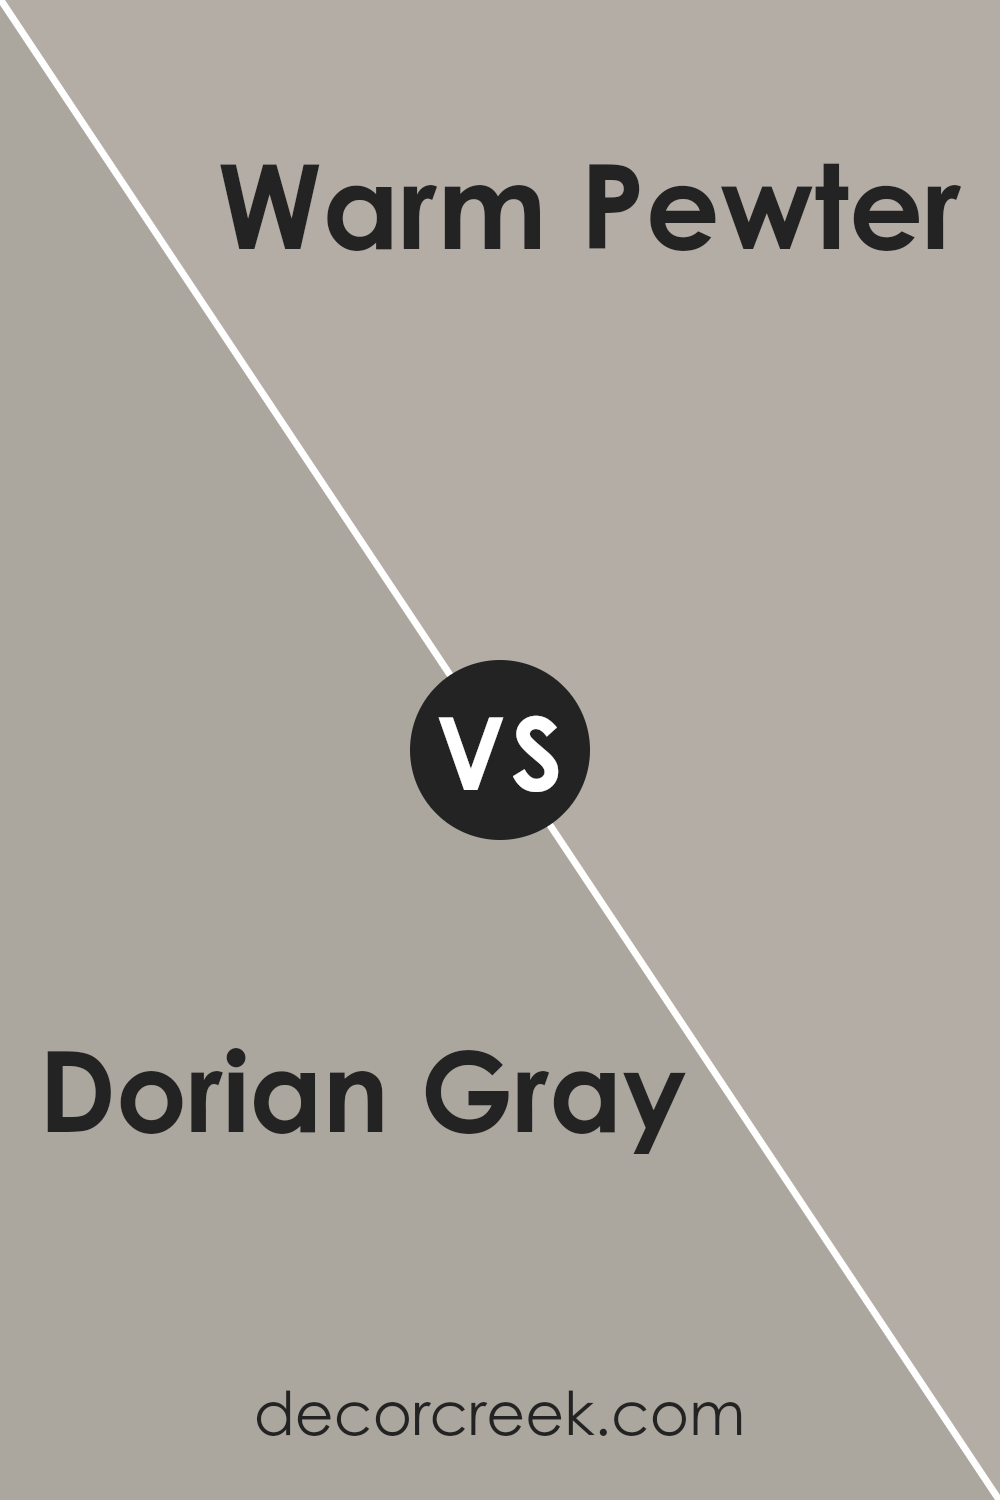 dorian_gray_sw_7017_vs_warm_pewter_sw_9572